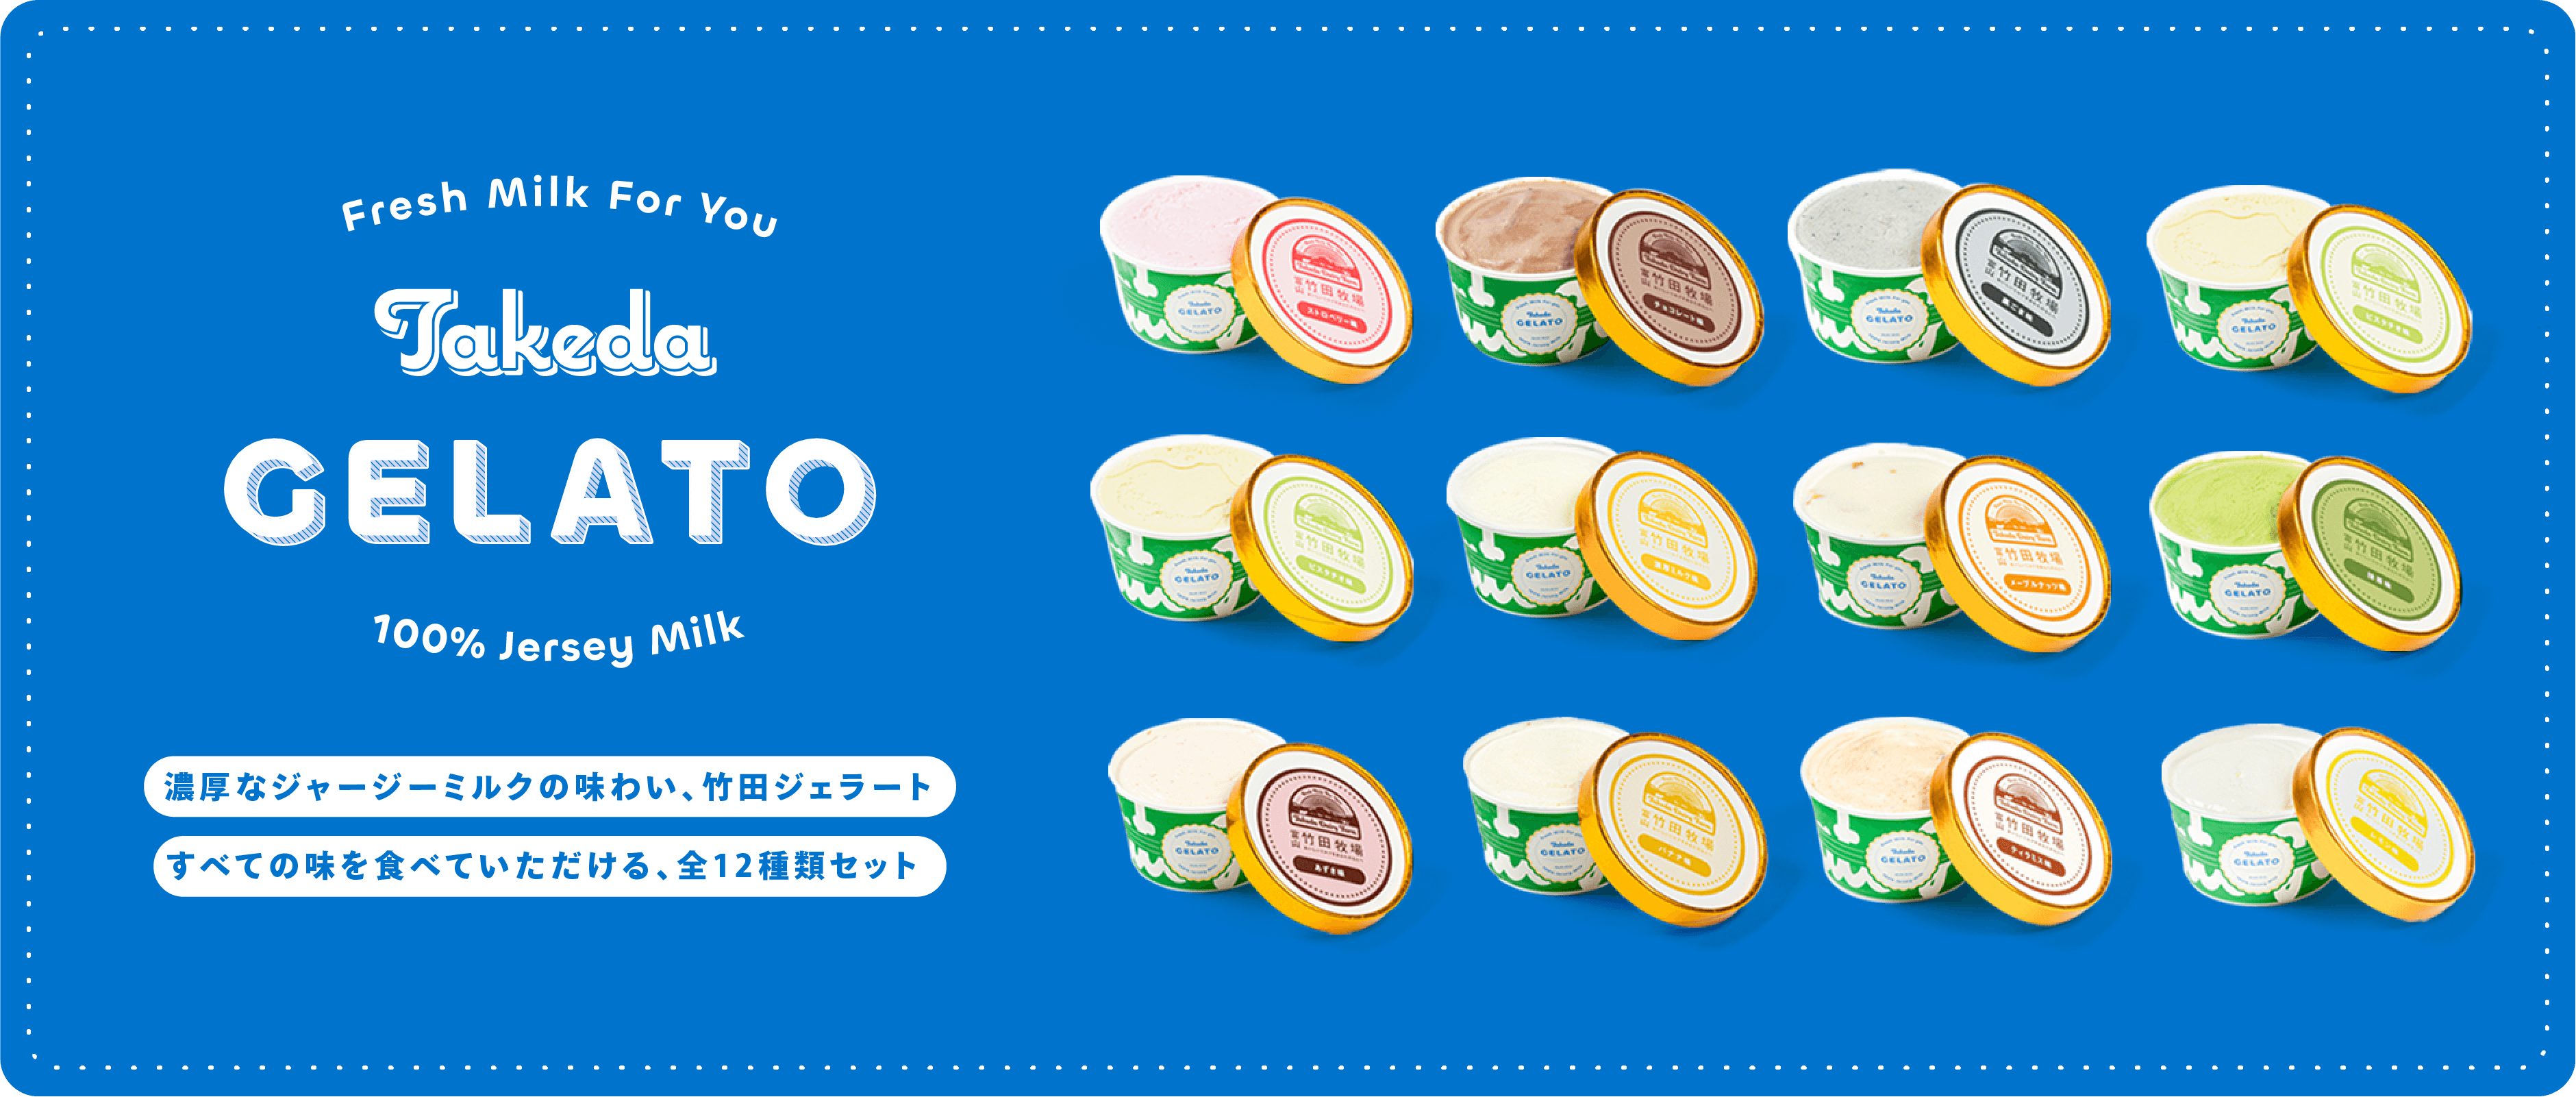 竹田ジェラート,アイスクリーム